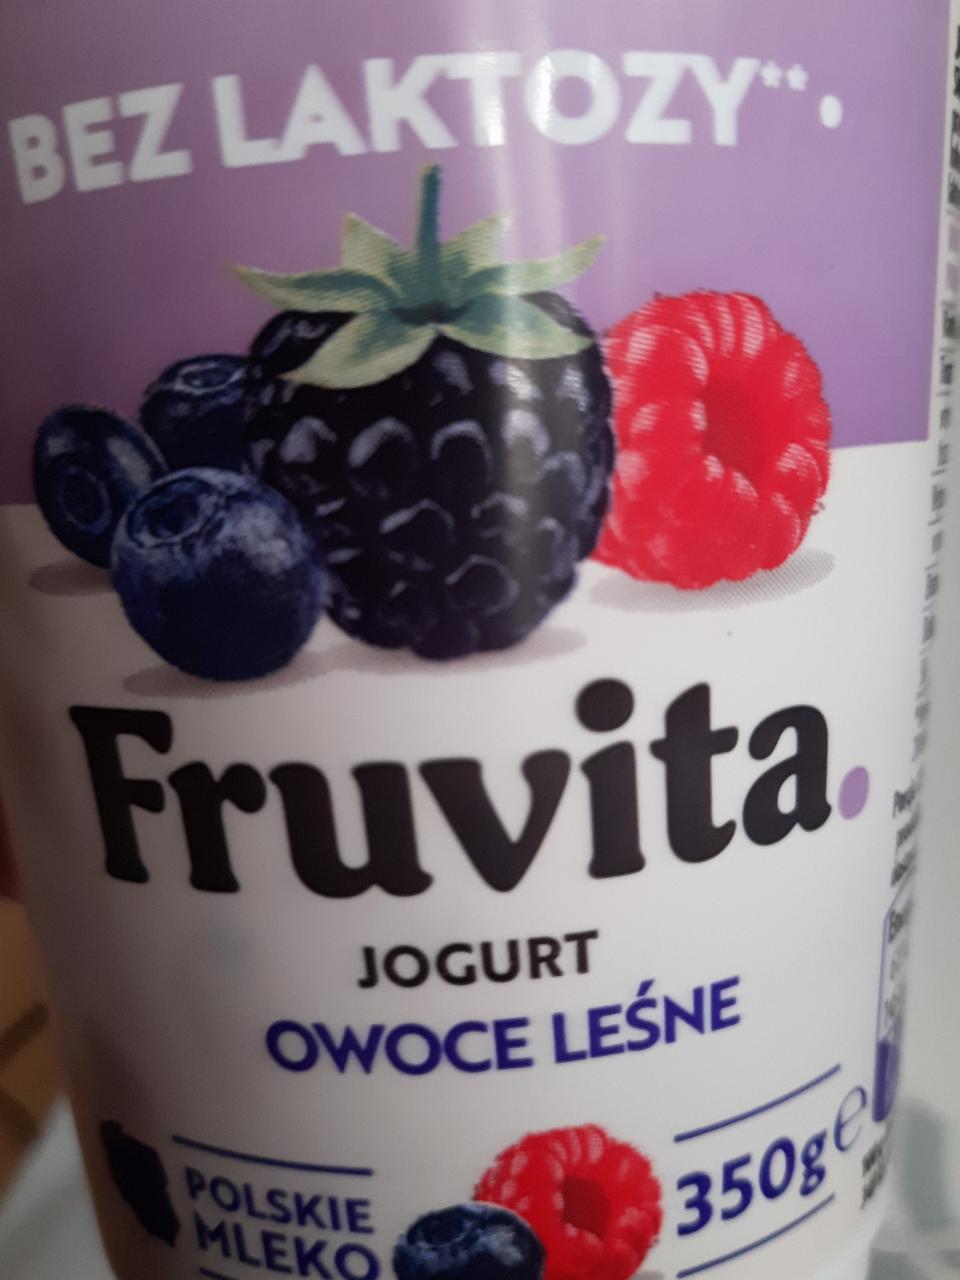 Zdjęcia - Fruvita jogurt owoce leśne bez laktozy